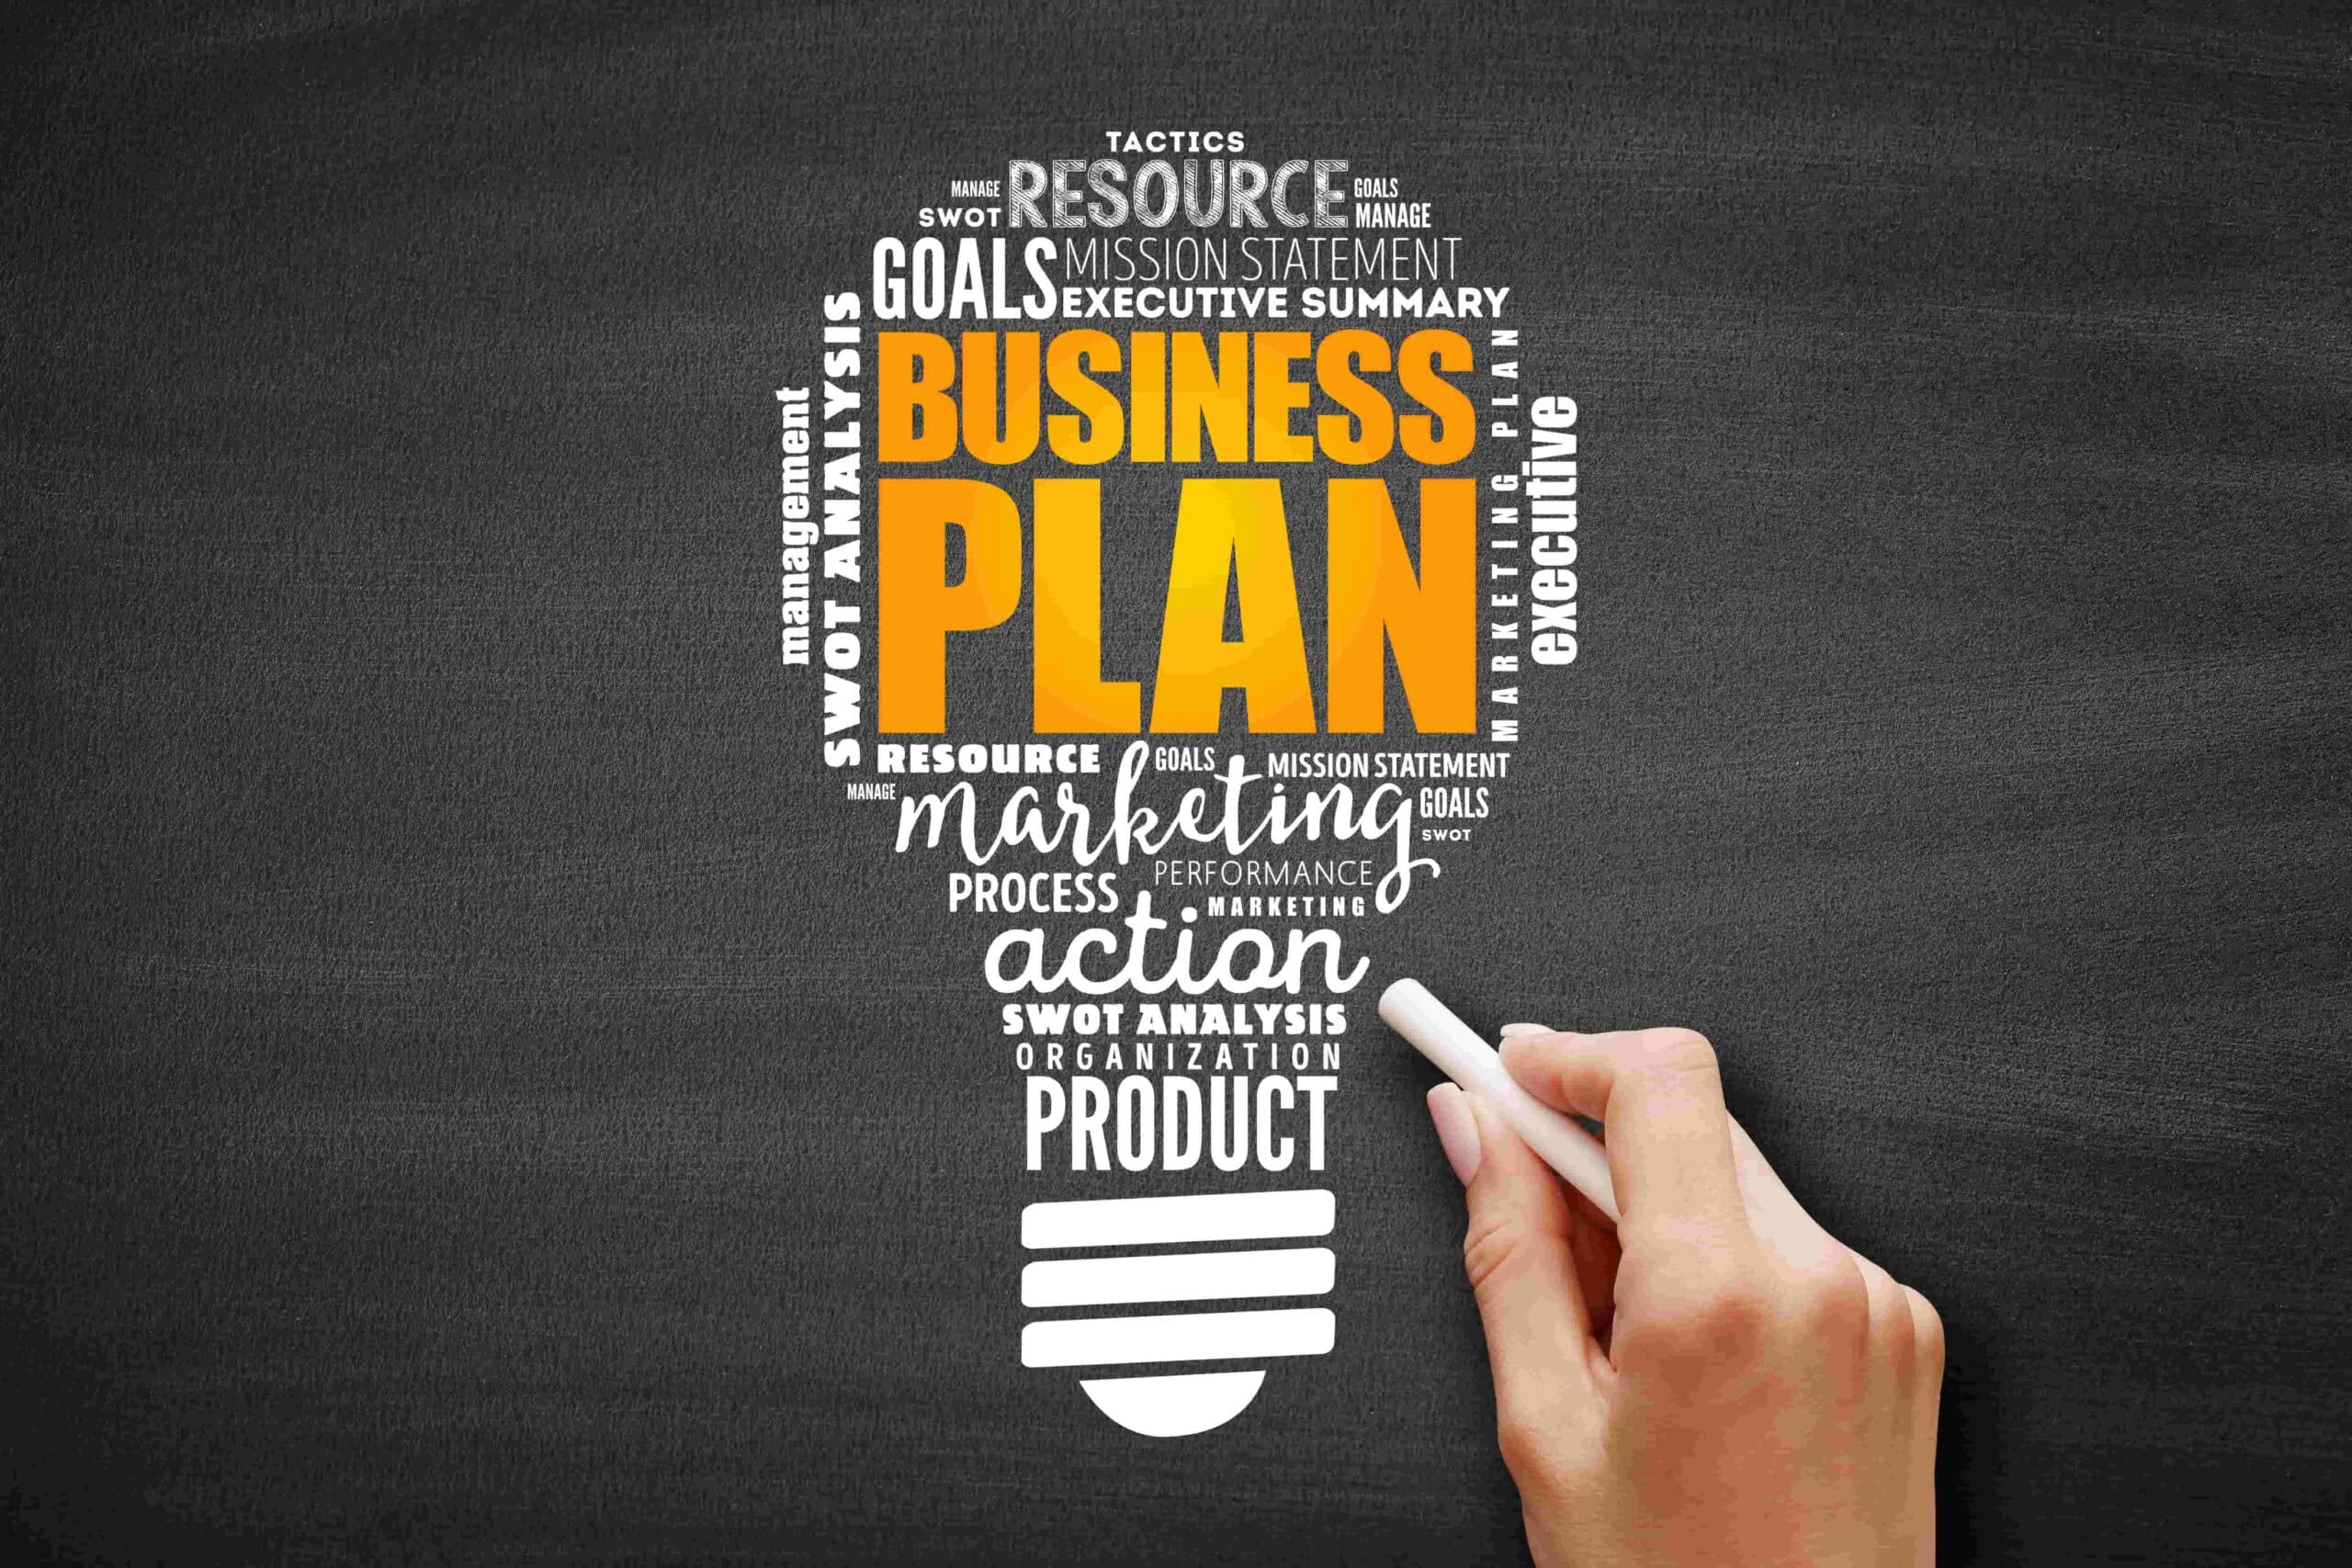 Business-Plan-A